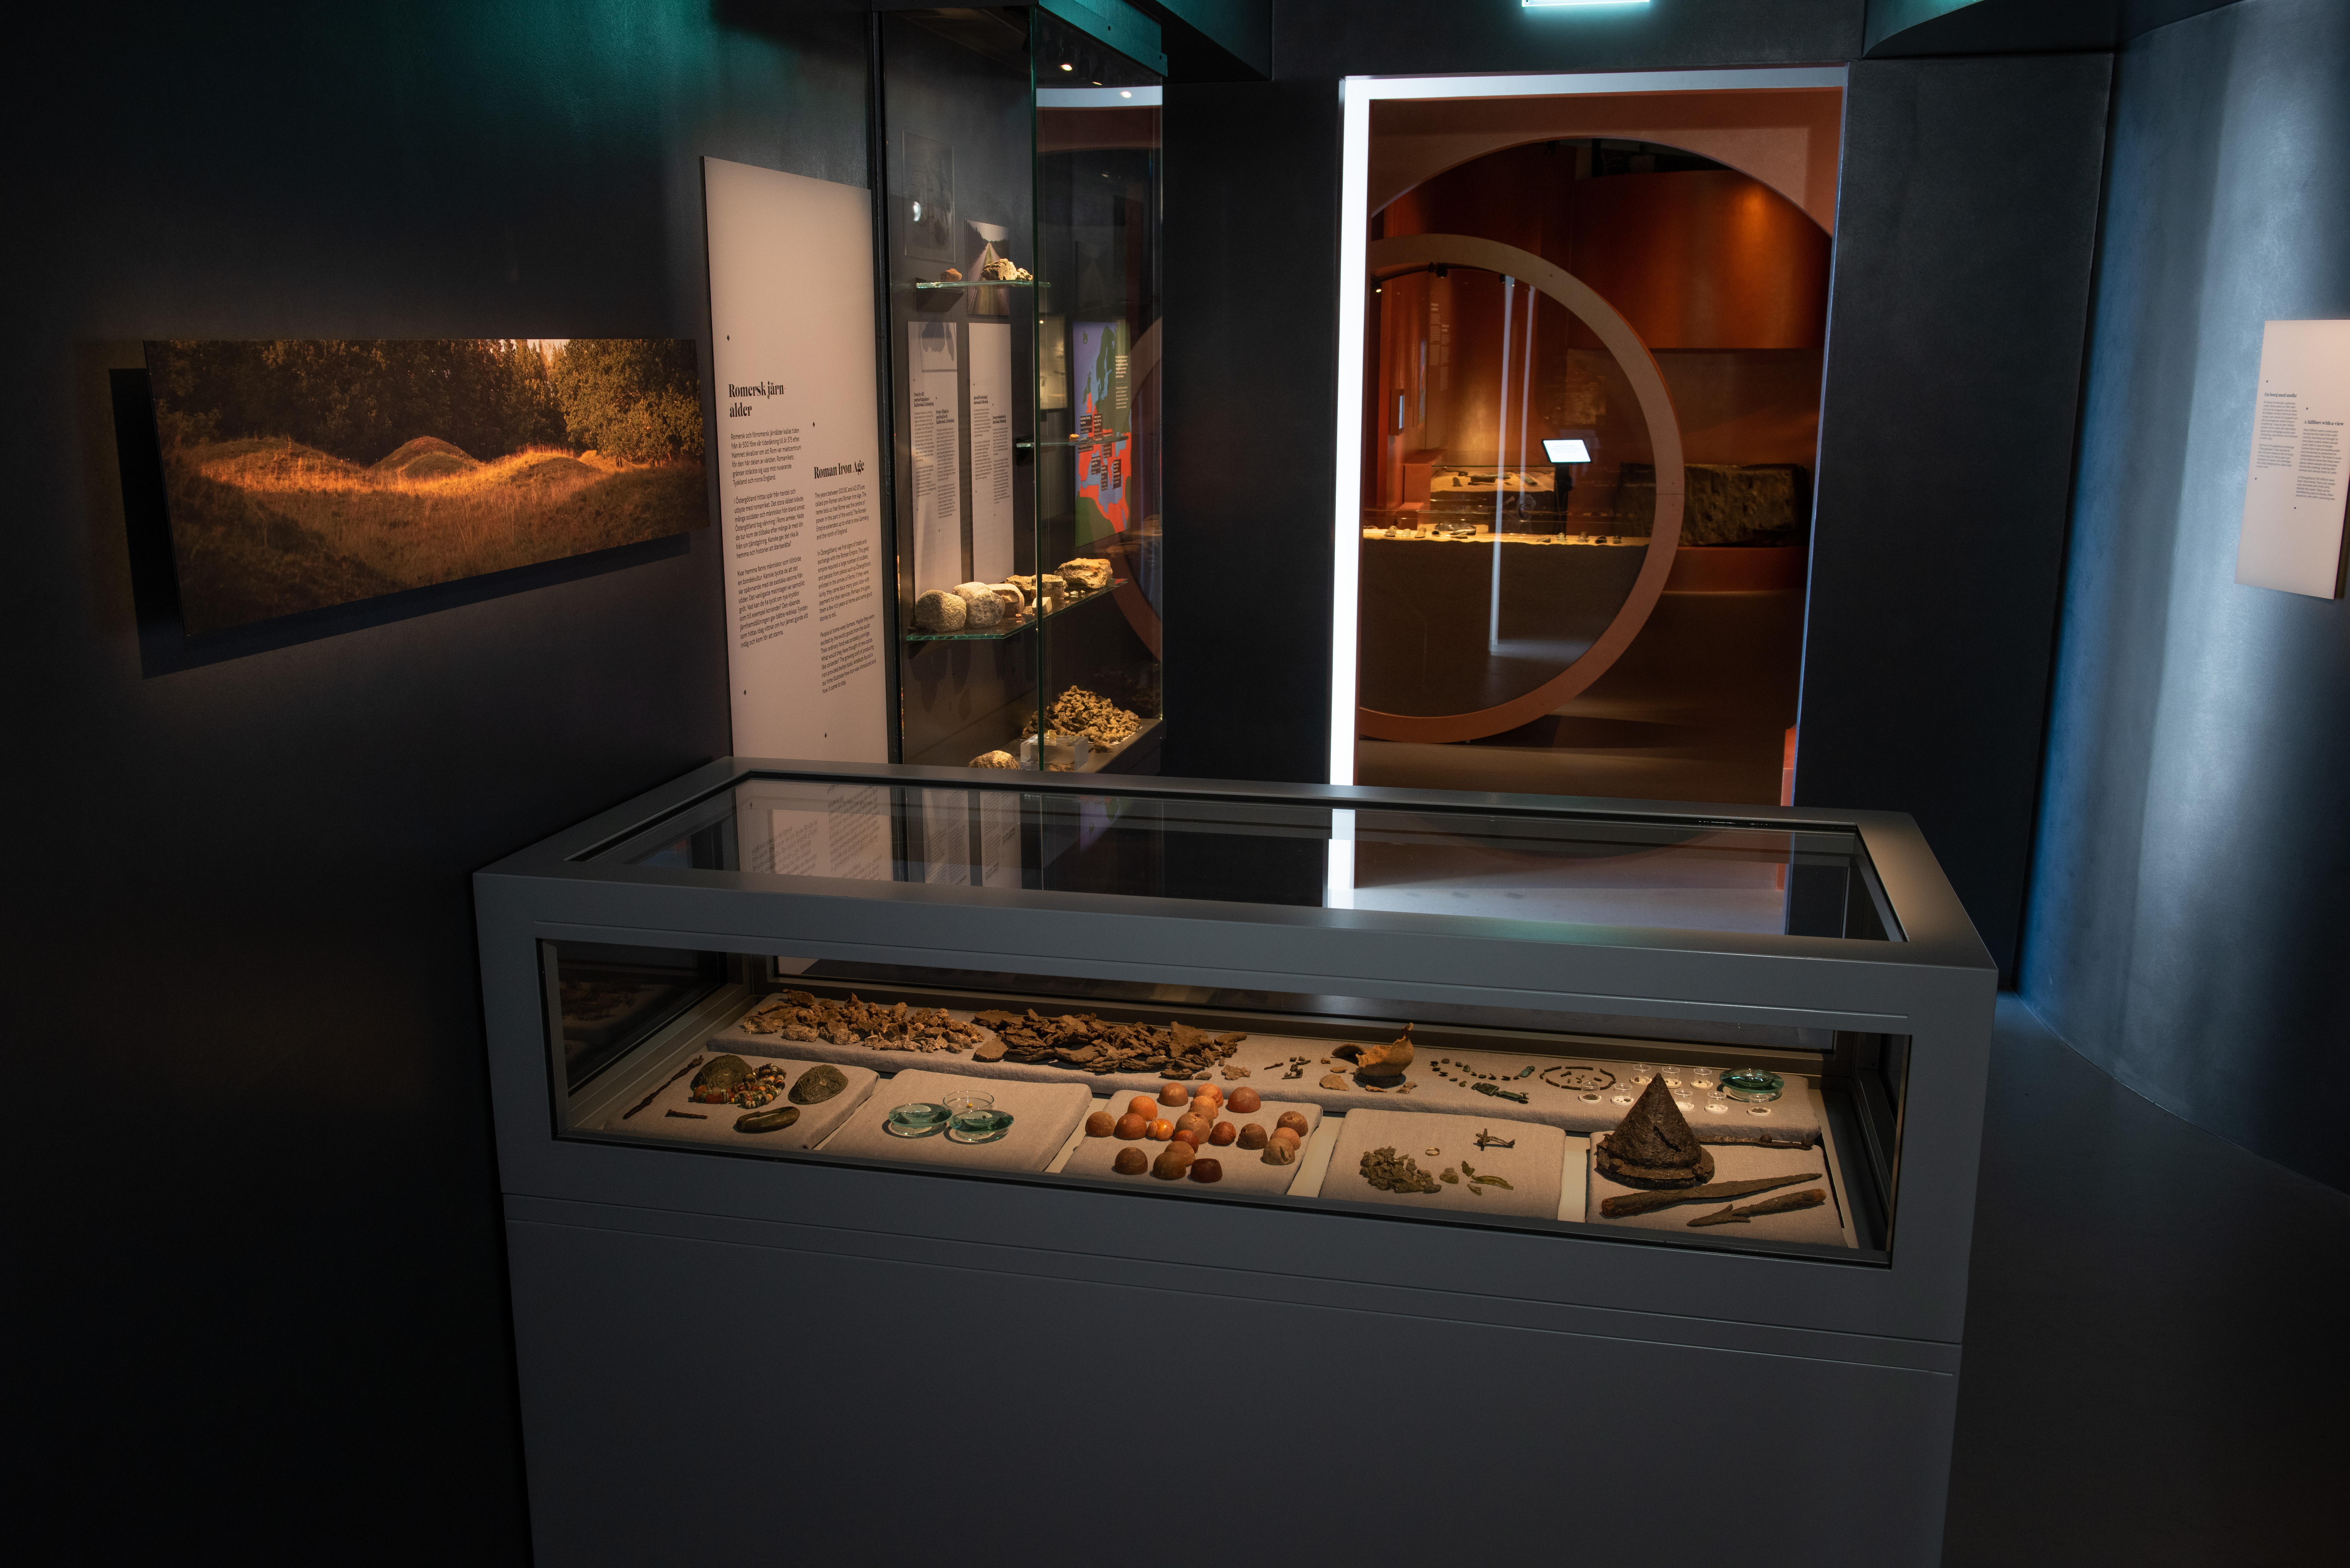 Ett rum som visar föremål från järnålder i utställningen Vägen hit. I förgrunden syns en rektangulär monter med glas på toppen. Inuti syns många arkeologiska fynd. 